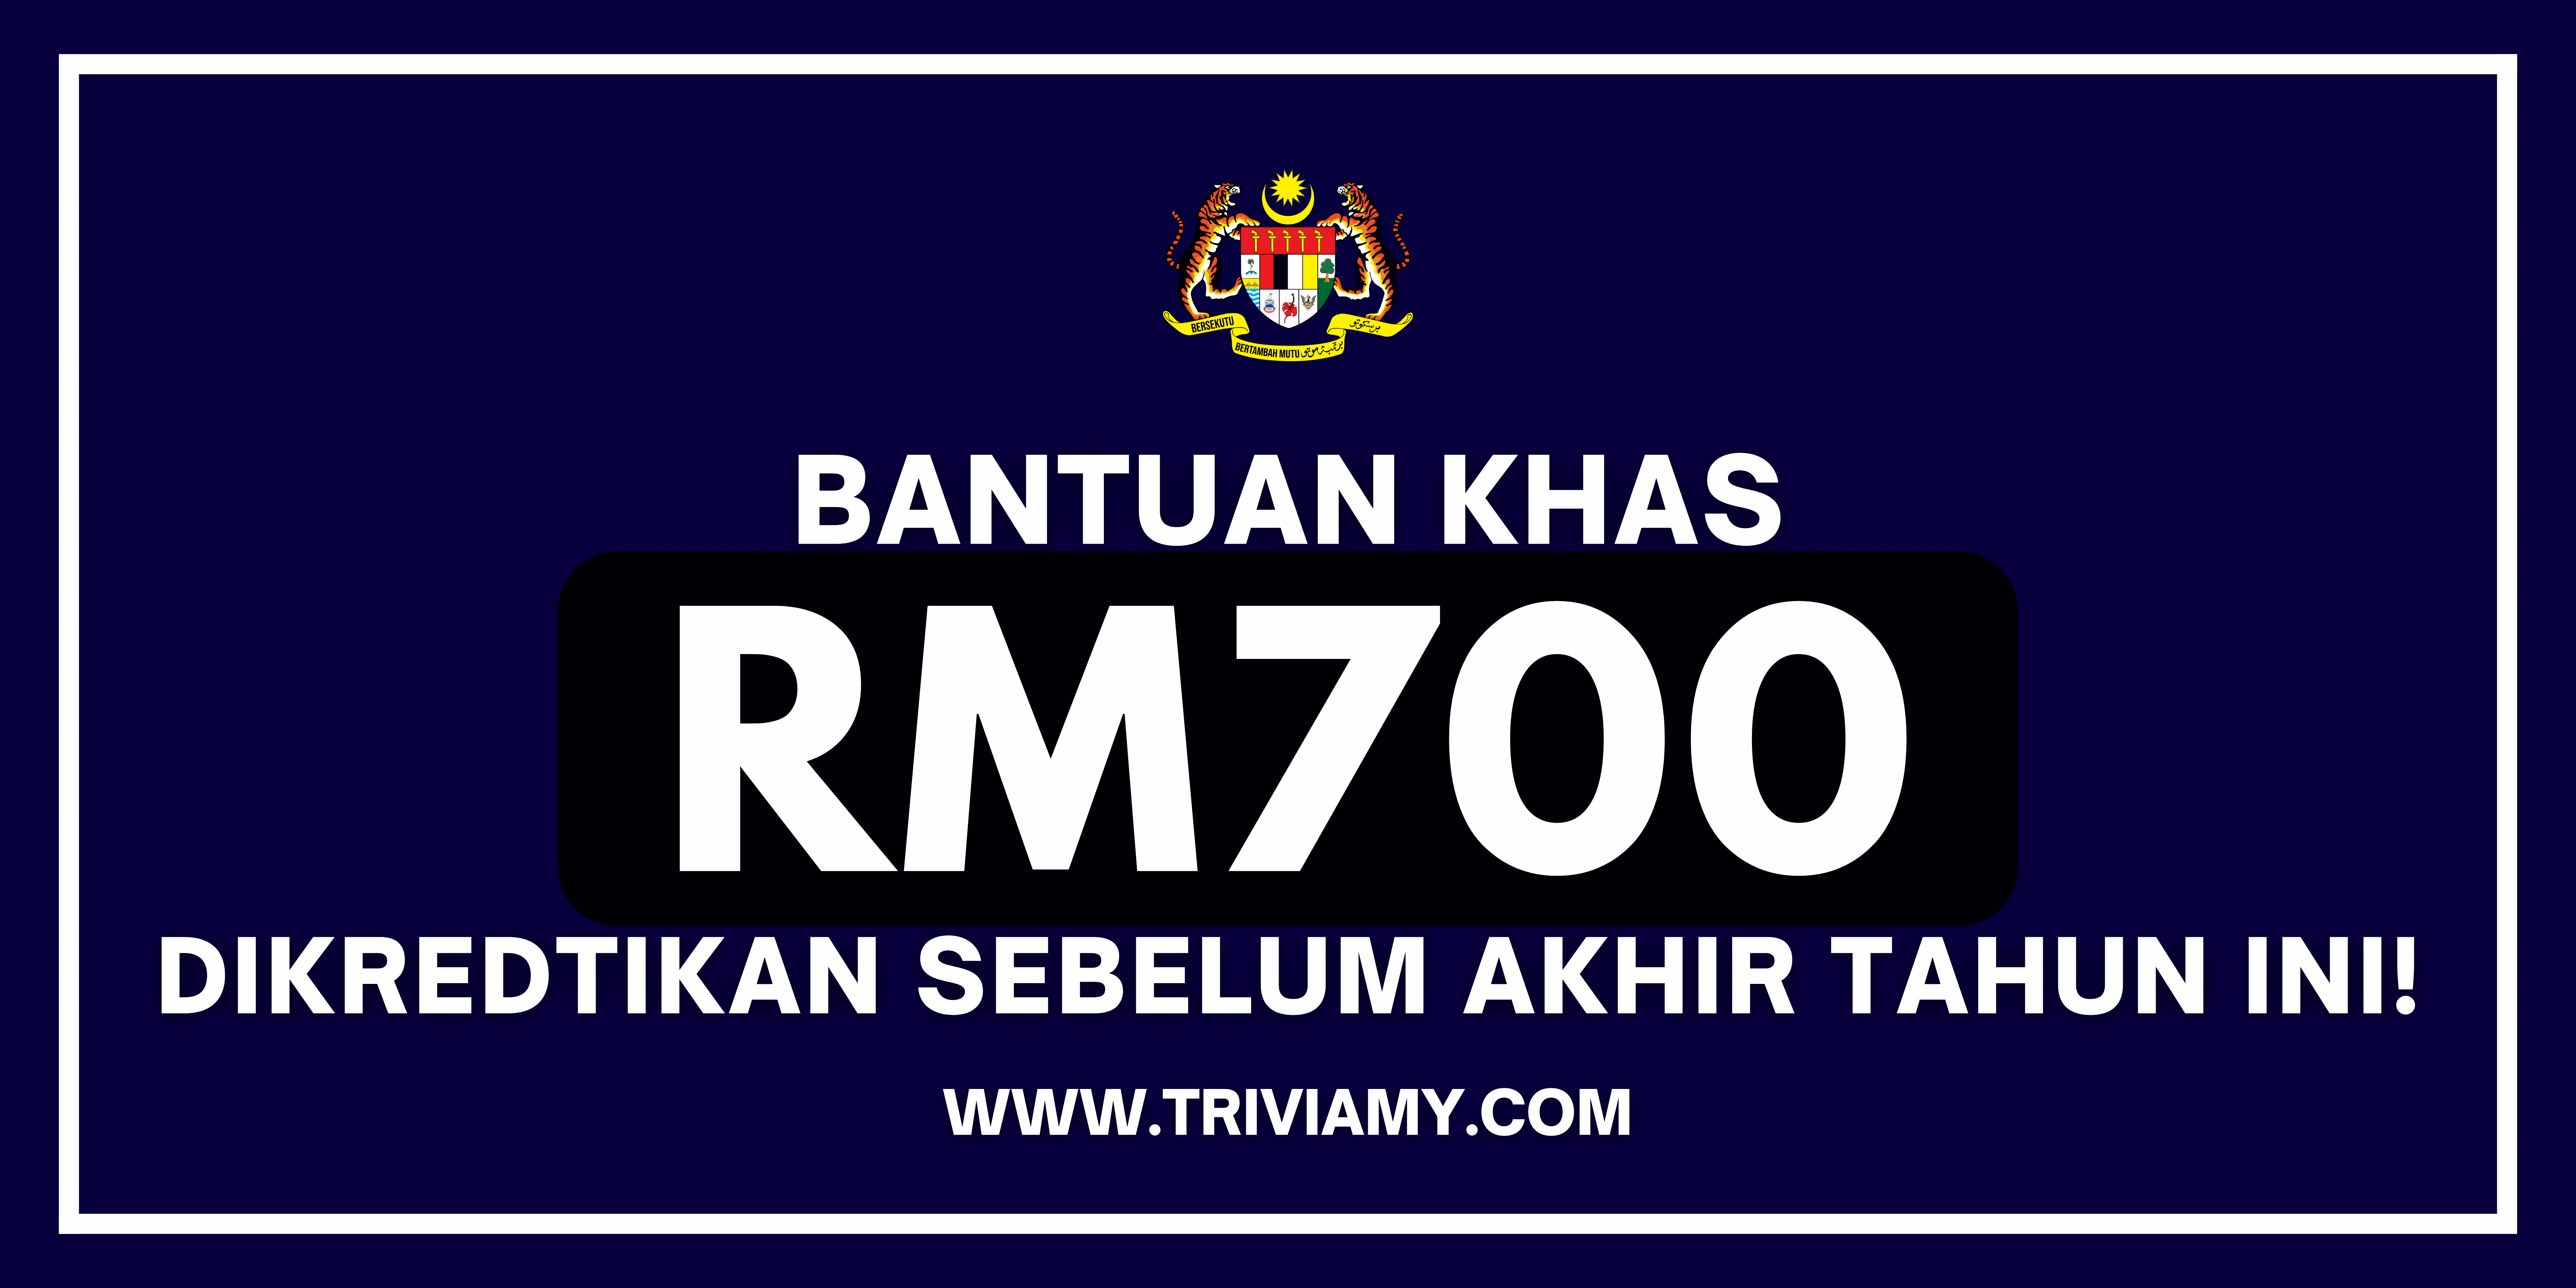 Bantuan Khas RM700